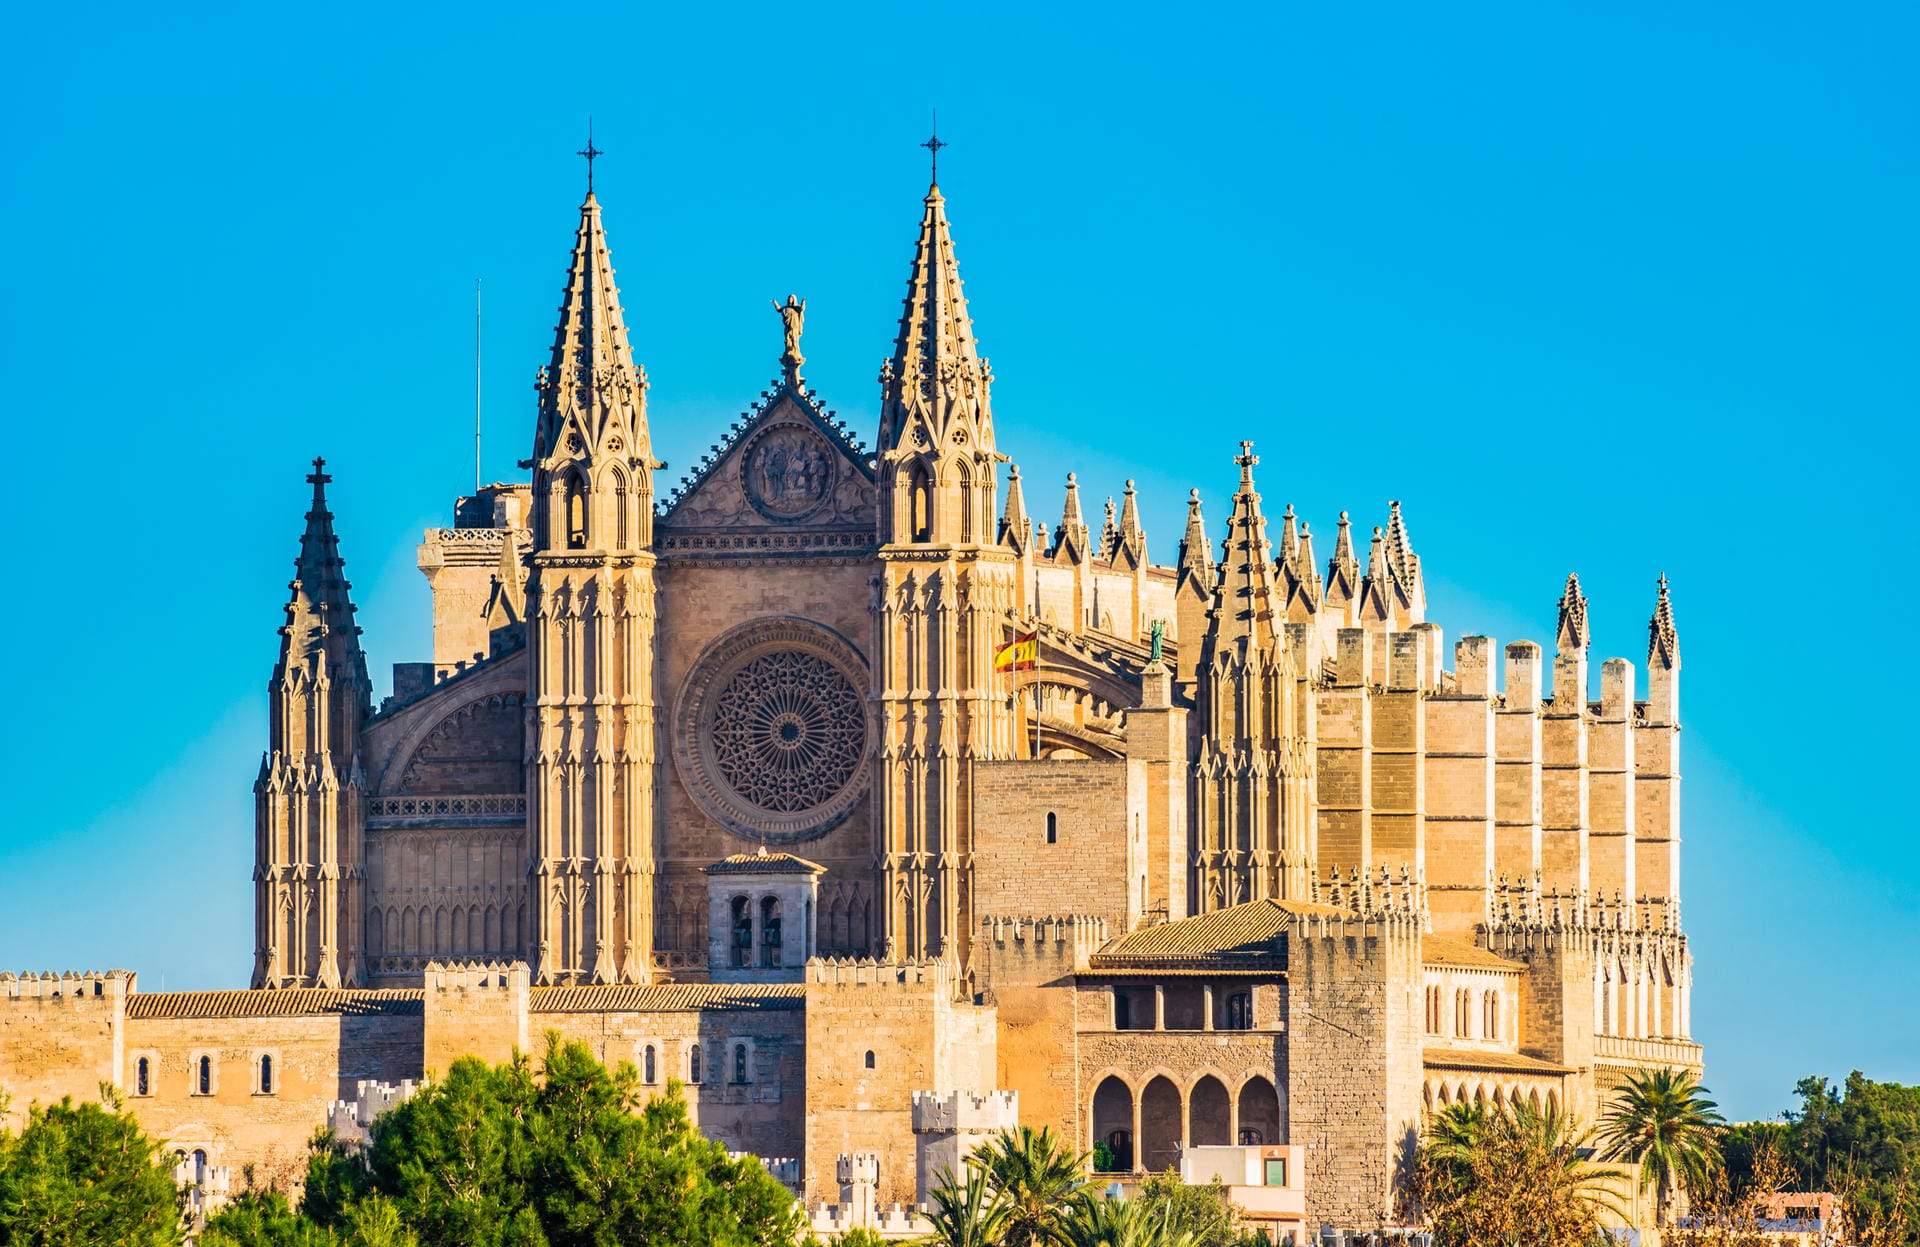 Kathedrale "La Seu": In der Kathedrale "La Seu" können Sie die größte gotische Fensterrose der Welt sehen.